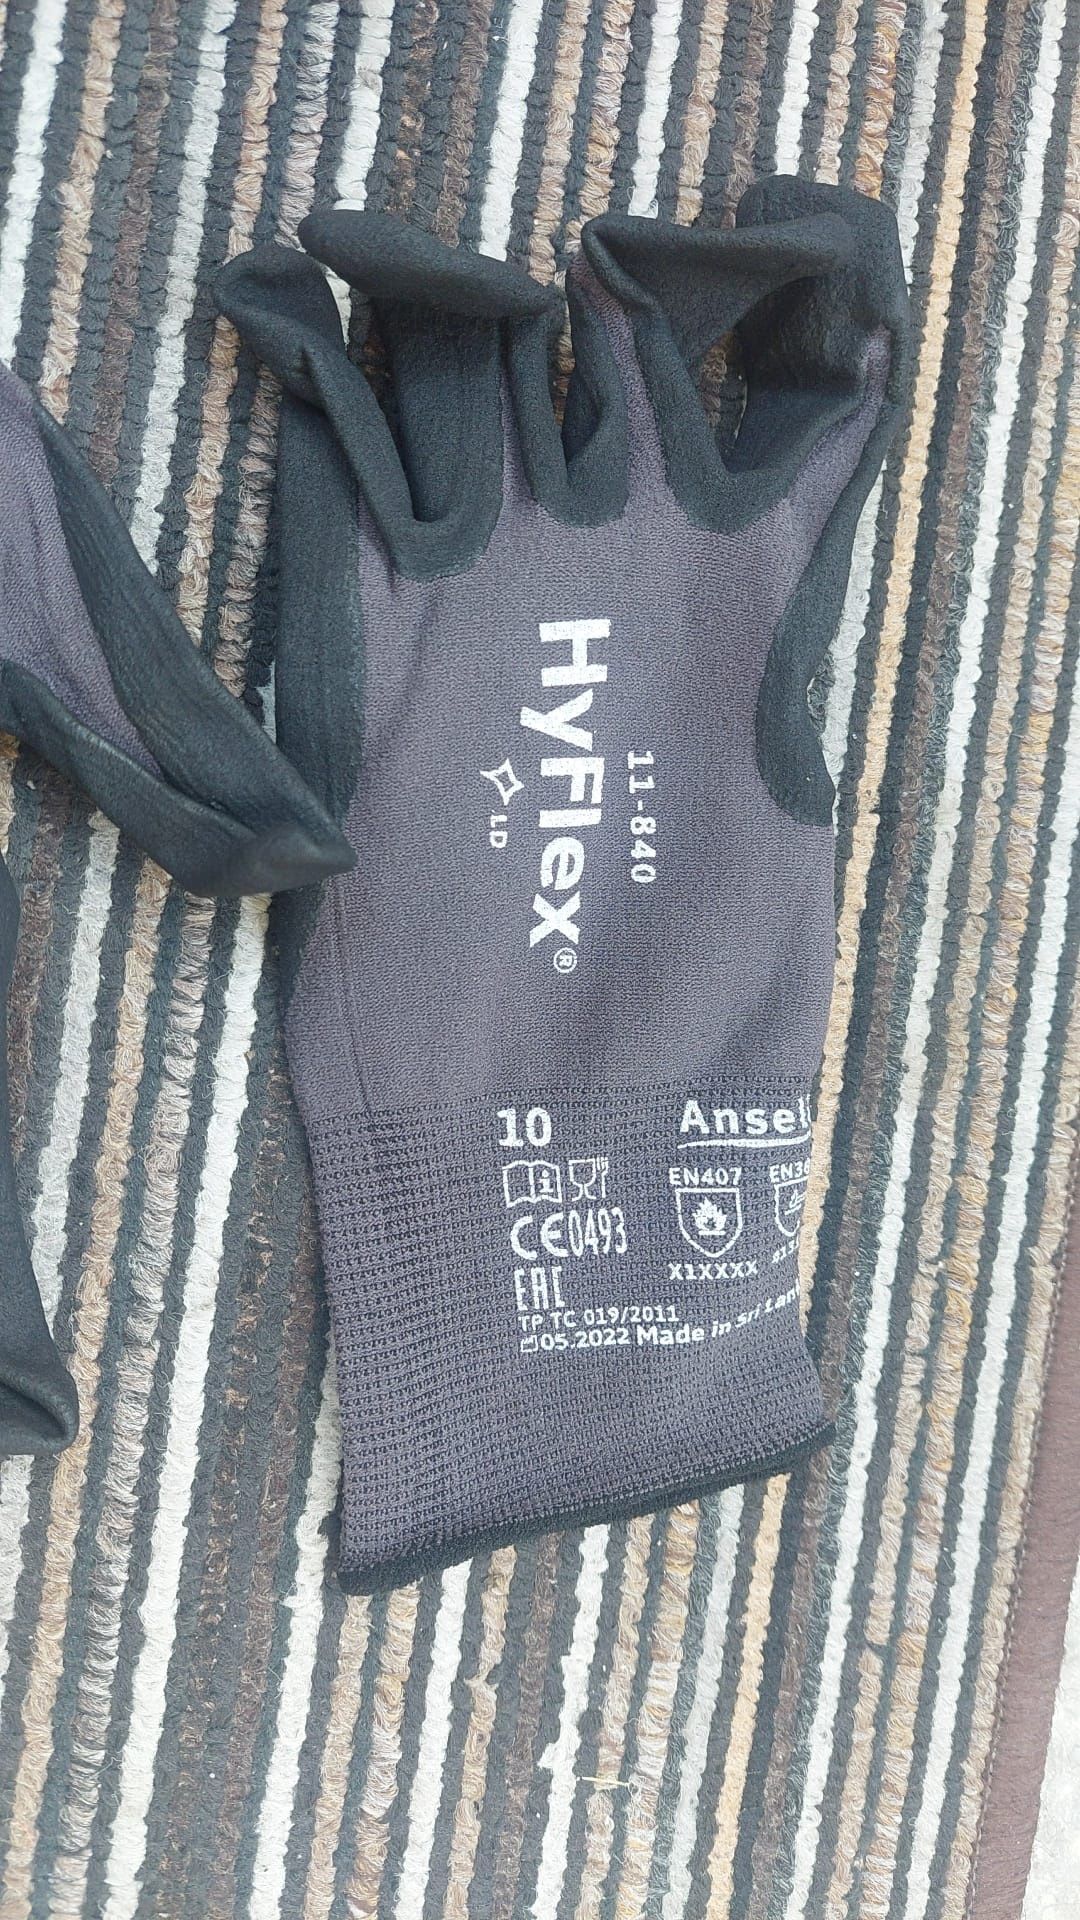 Mănuși protecție hyflex nr 9 și 10